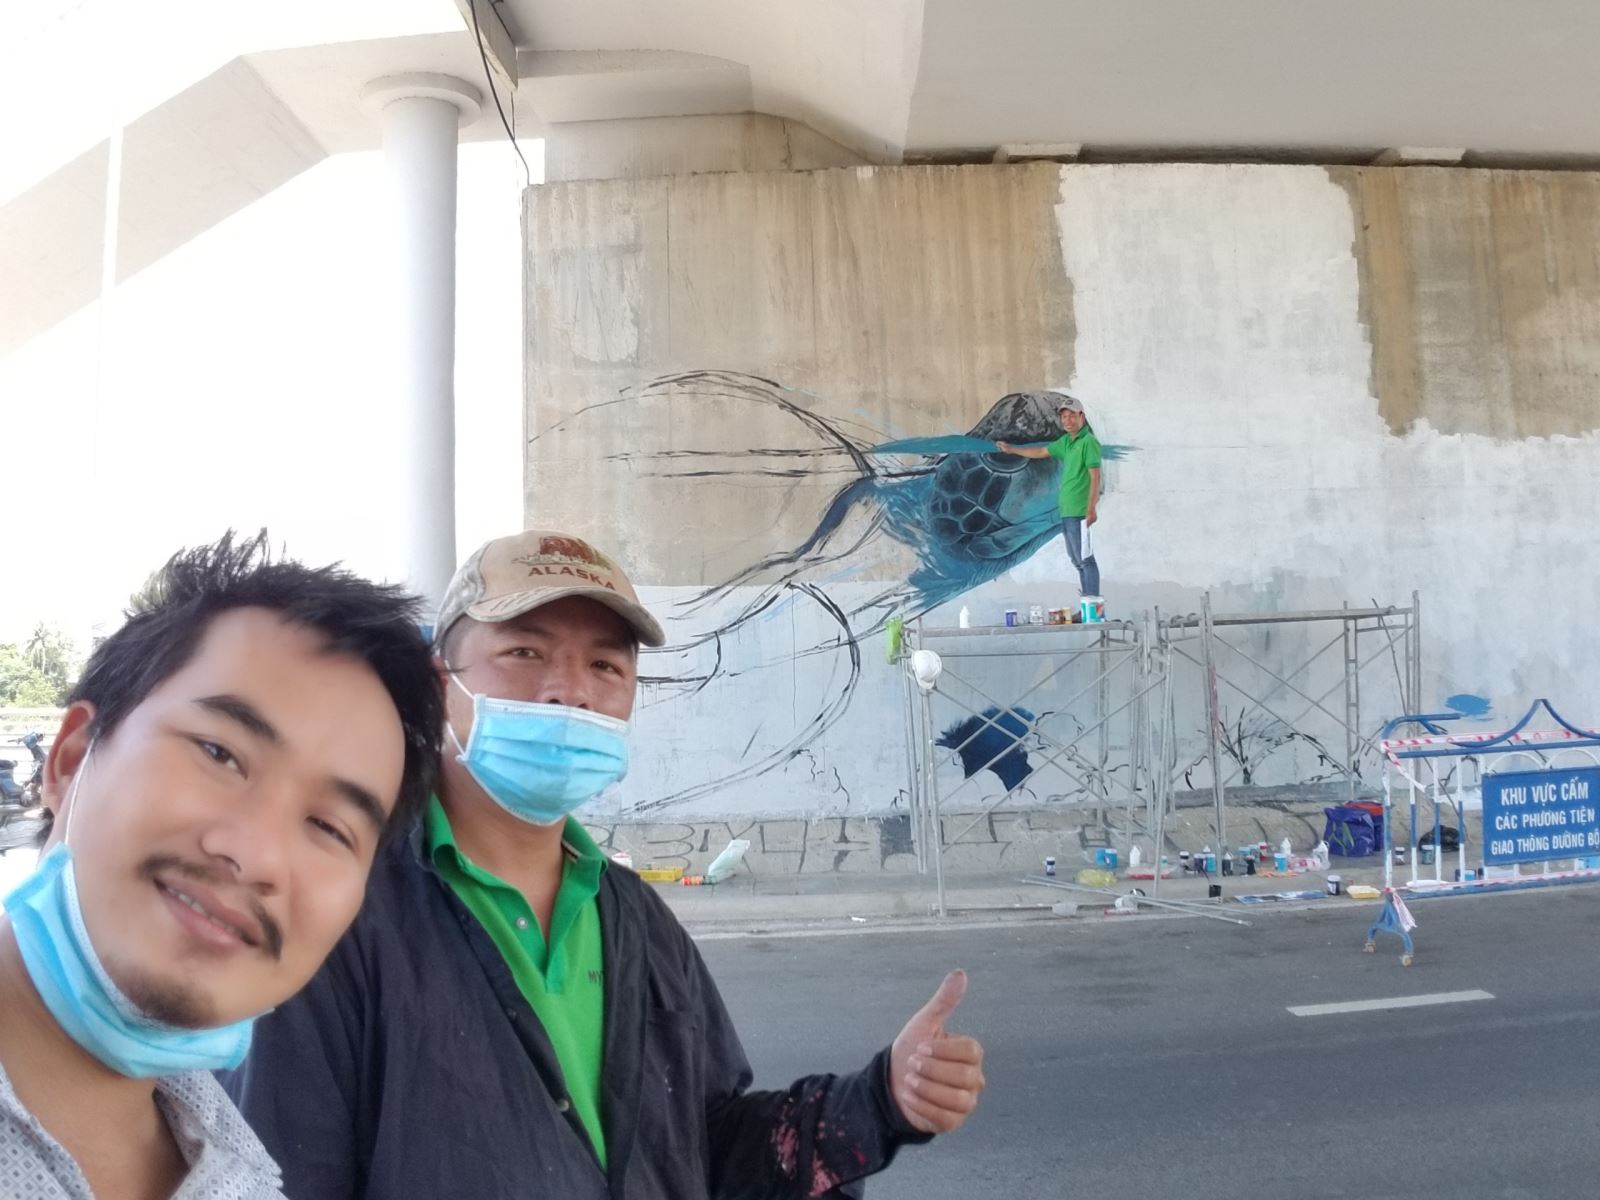 Bức tường bích họa ở Nha Trang Dự án tranh tường Bố Già vẽ tranh tường khu phố miễn phí giai đoạn 2019-2021